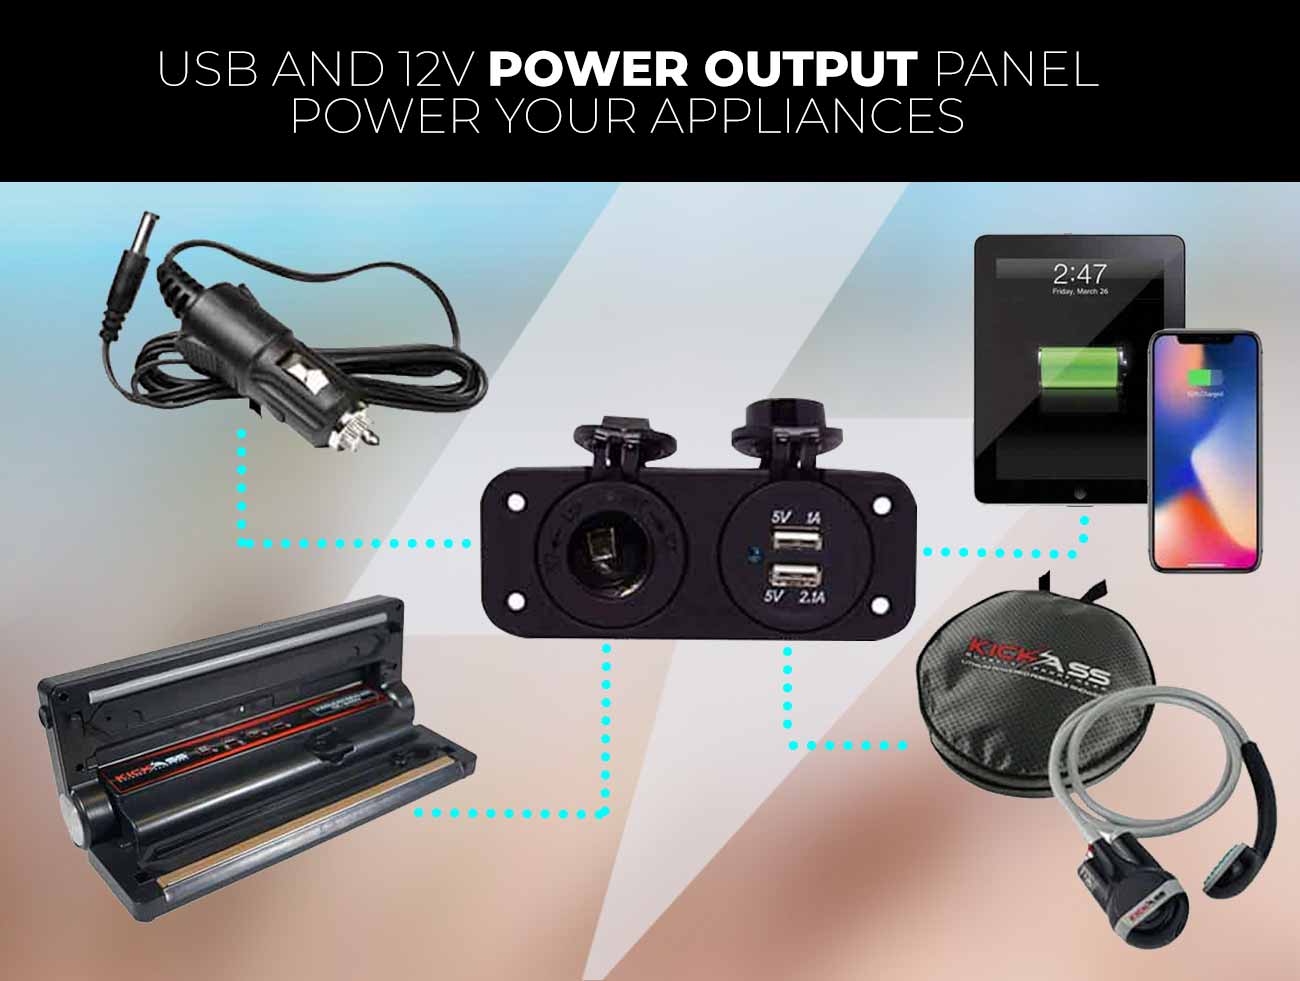 USB and 12V power output panel